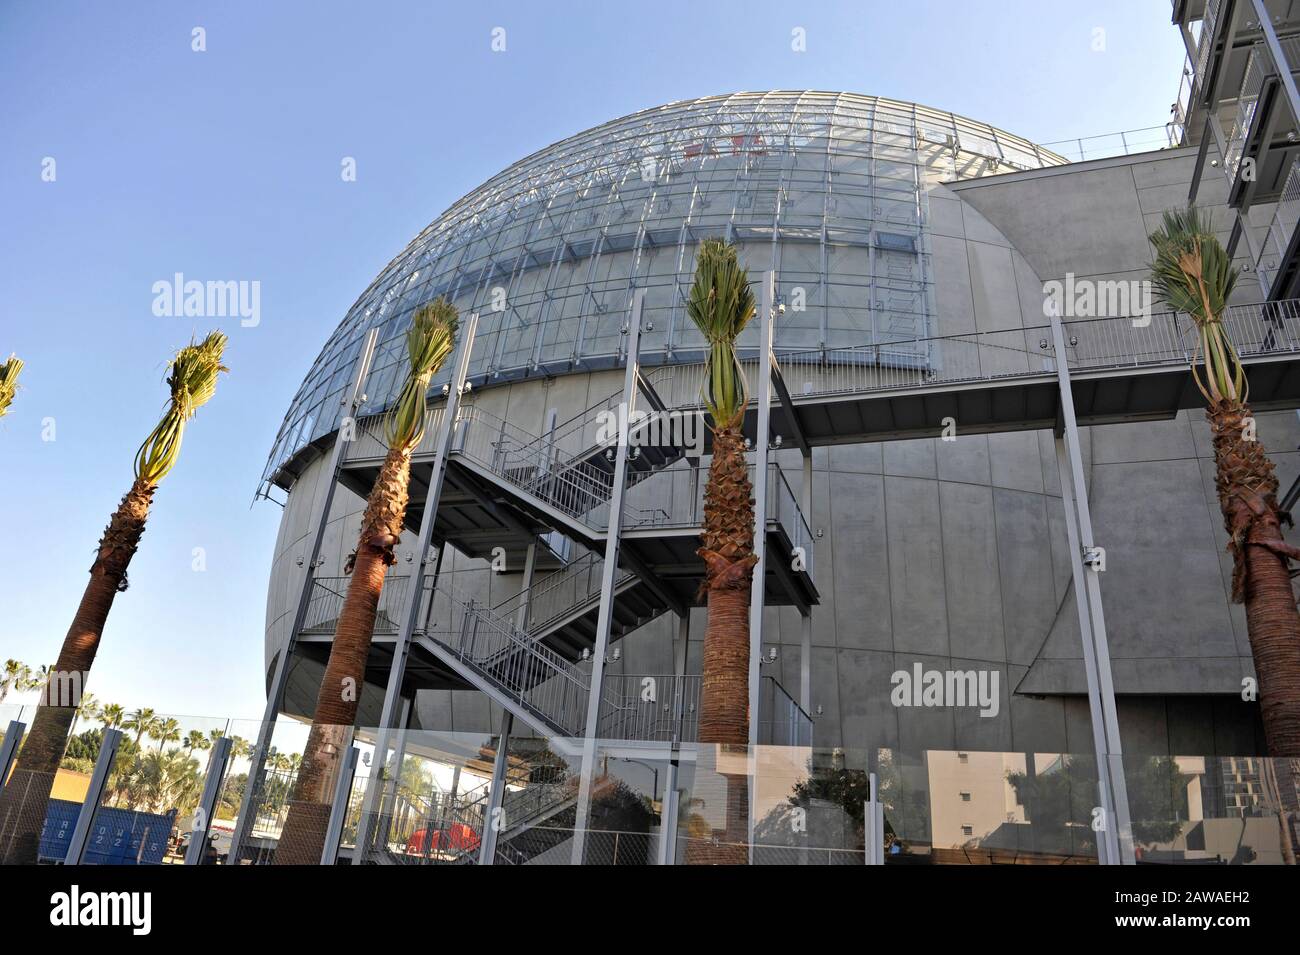 Das fast fertiggestellte Kugelgebäude an der Academy Museum of Motion Pictures wurde vom Architekten Renzo Piano entworfen. Stockfoto